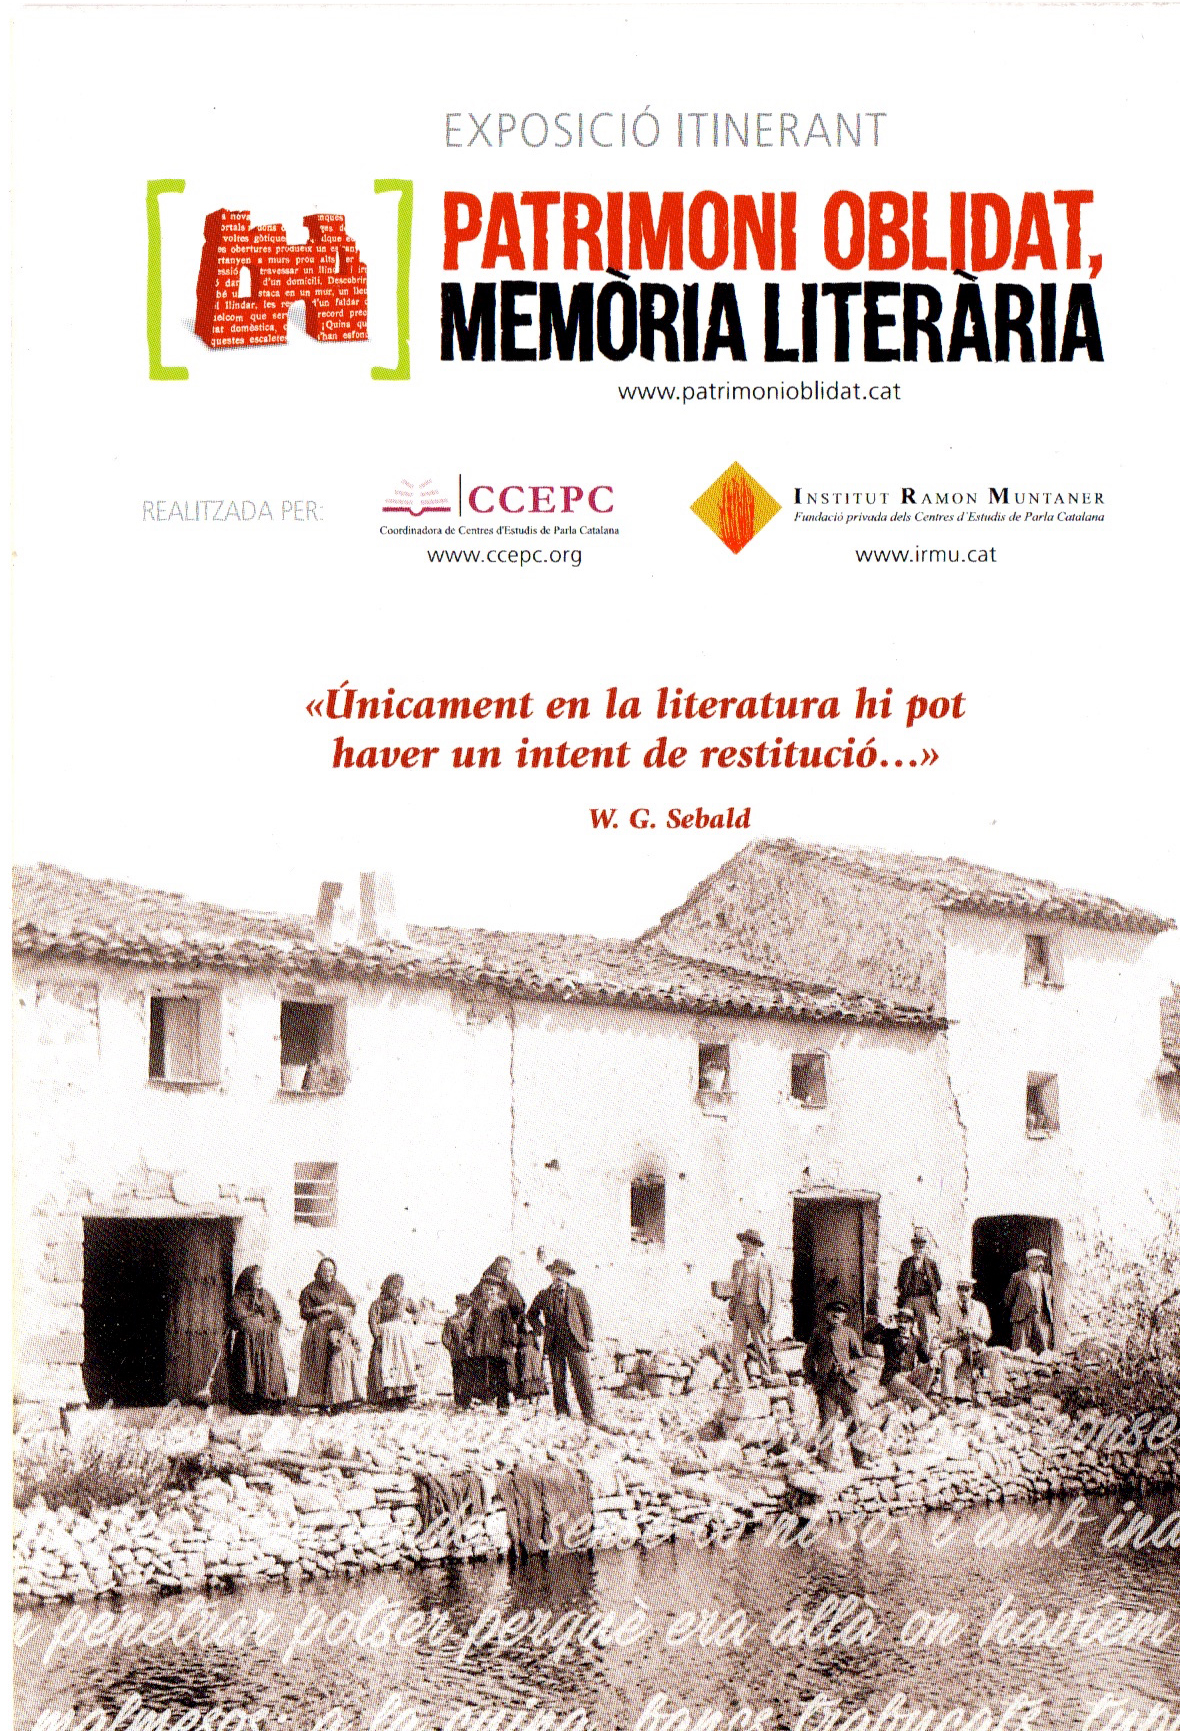 L’exposició itinerant “Patrimoni oblidat, memòria literària” arriba a Vinebre